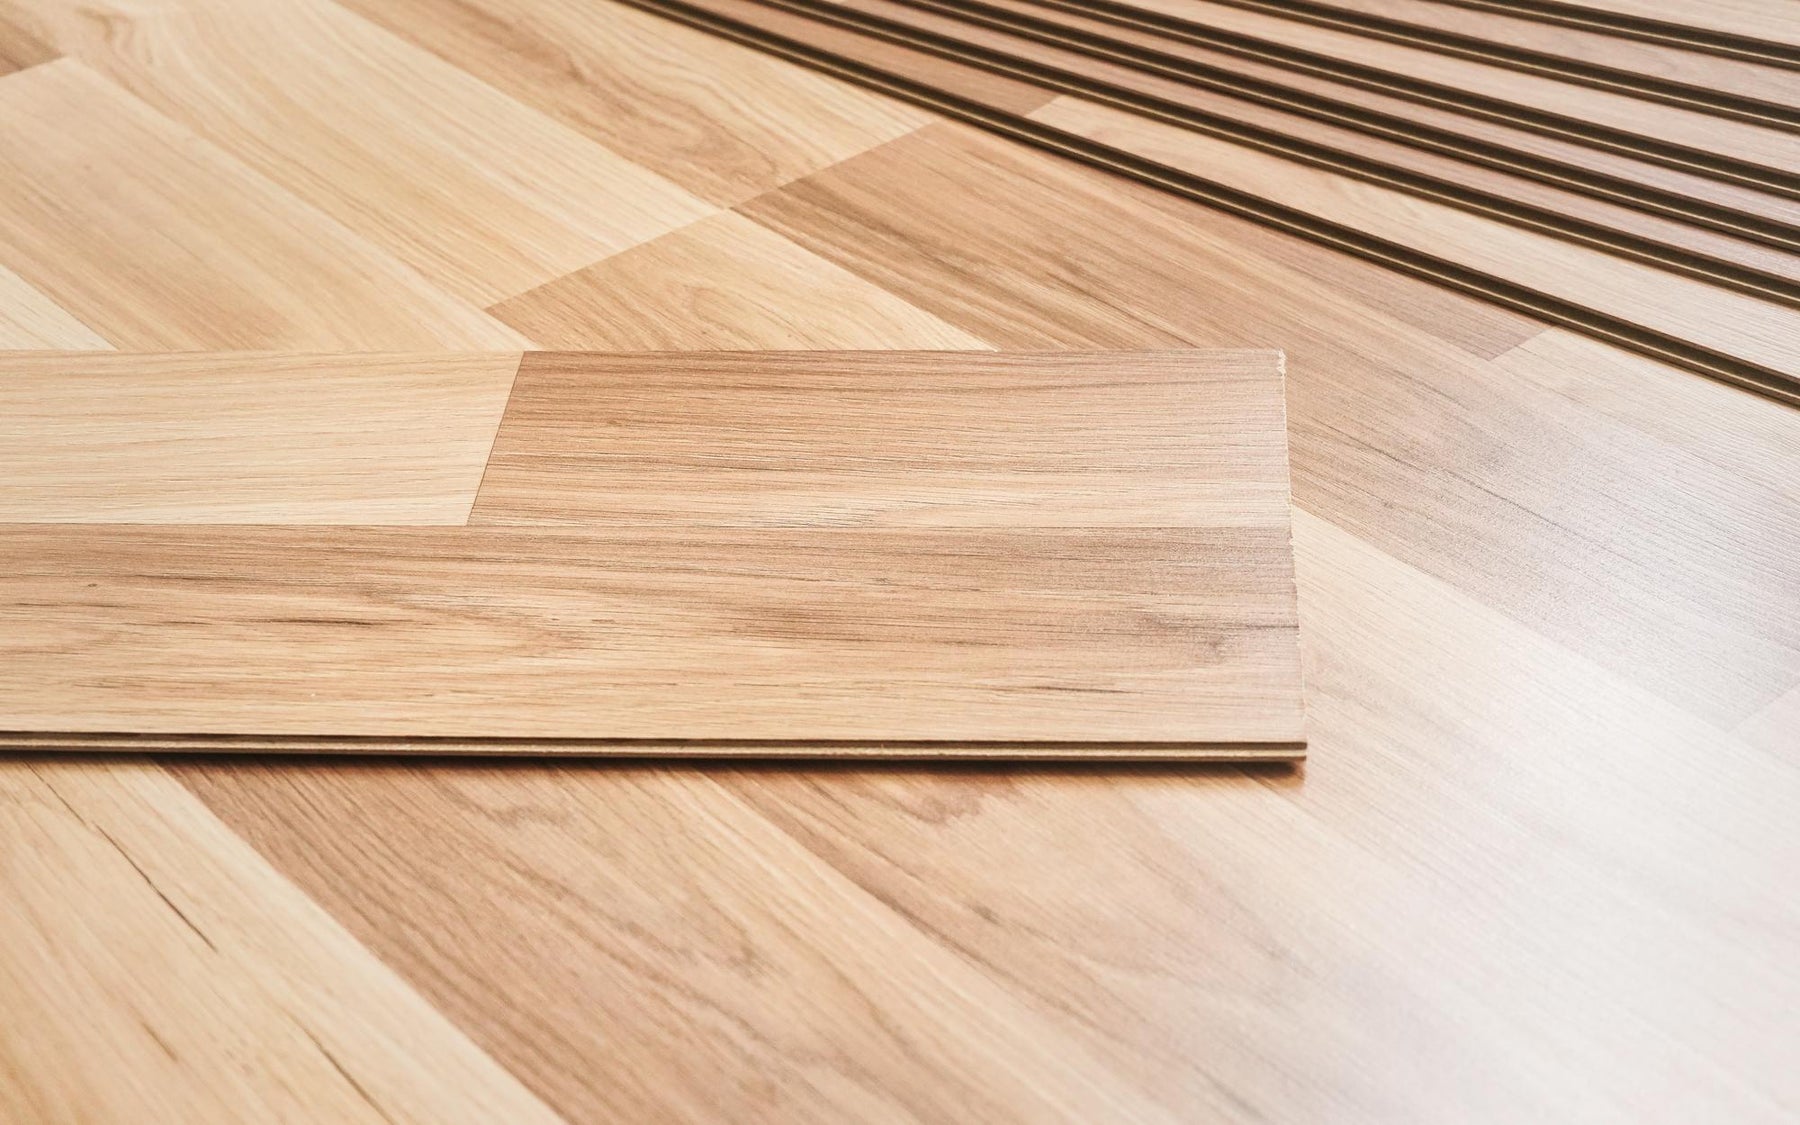 Engineered Wood Flooring vs Laminate